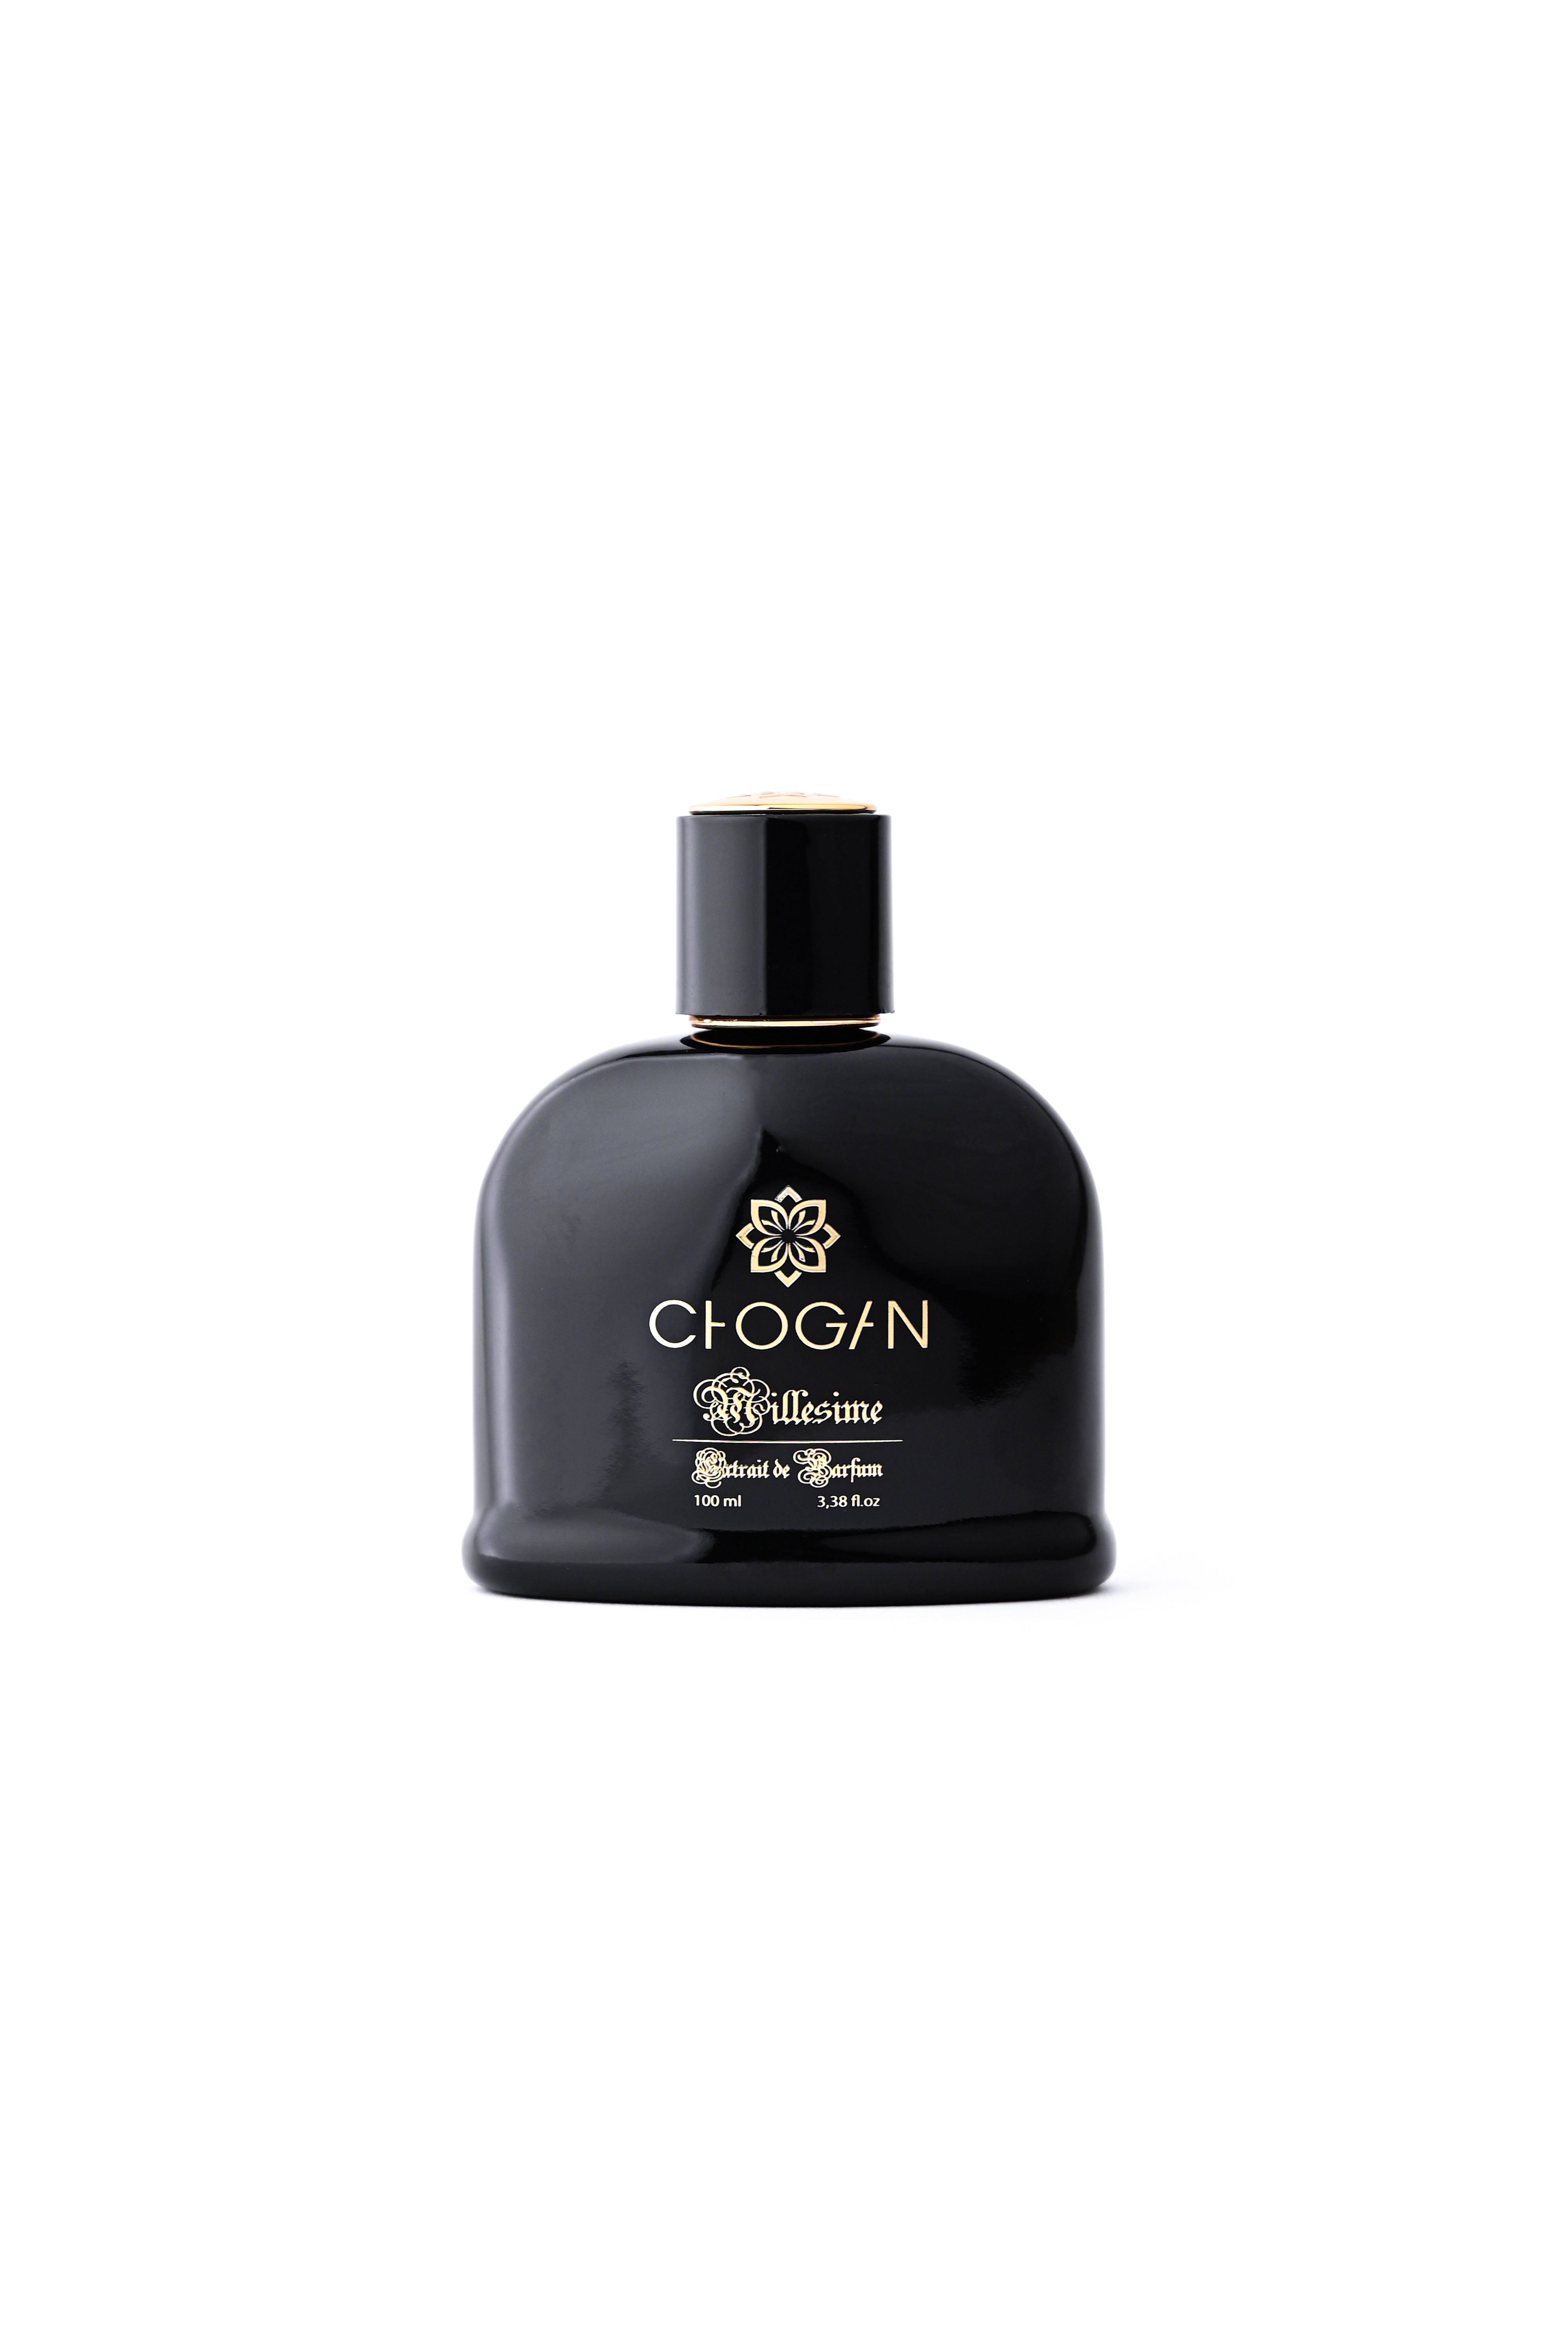 Chogan Parfüm No. 027 – Wohlfühlshop